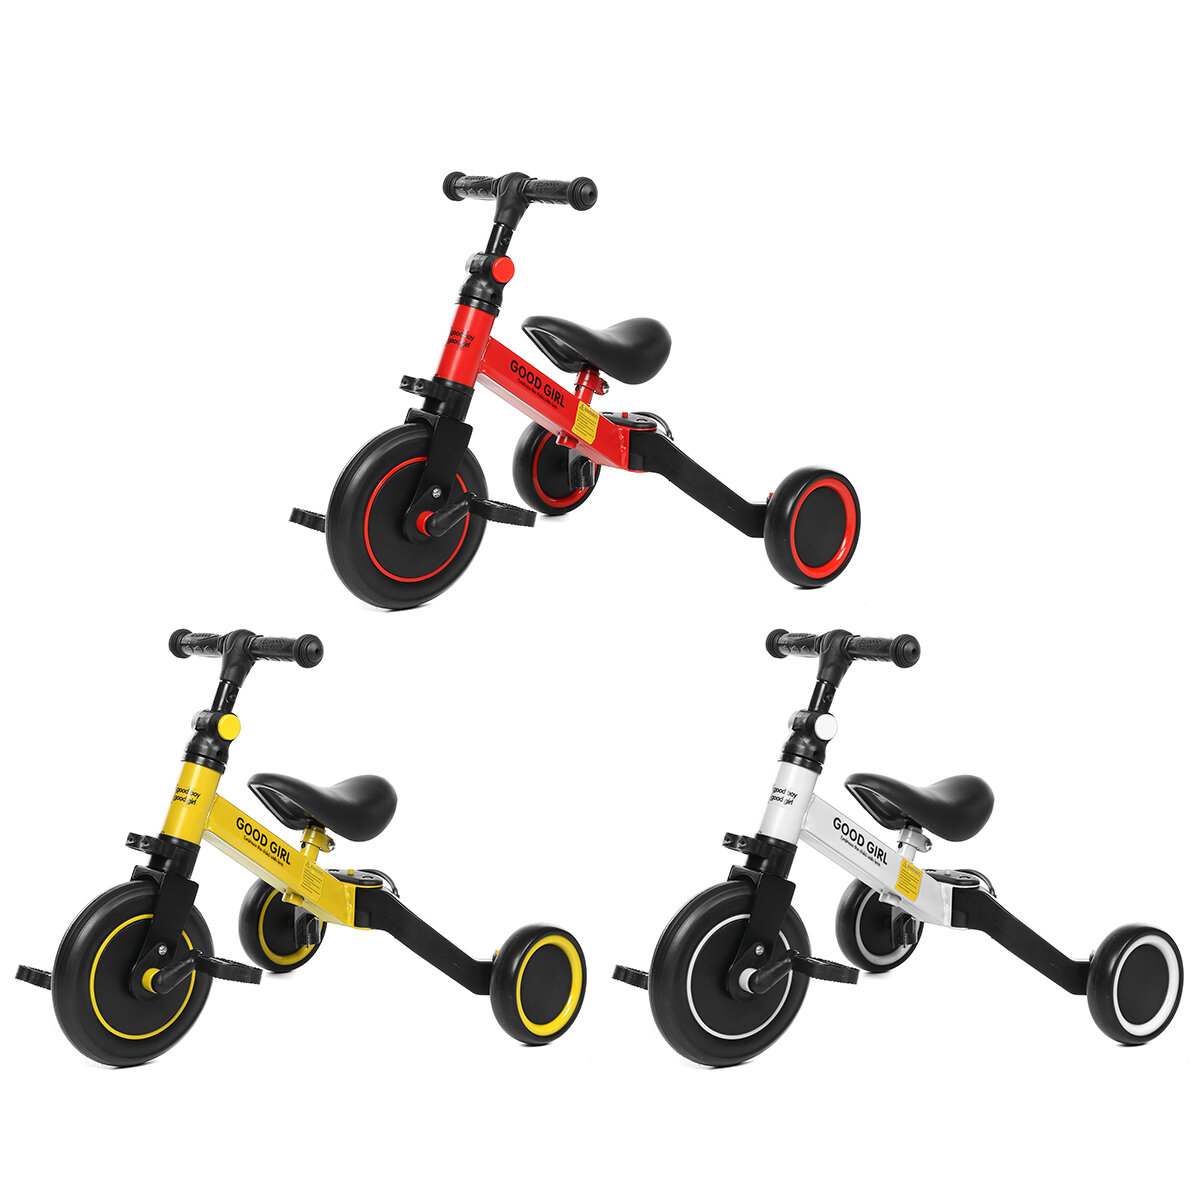 دراجة ثلاثية العجلات للأطفال 2 في 1 بدواسات قابلة للتعديل ودراجة توازن للأطفال الصغار من عمر 1-3 سنوات